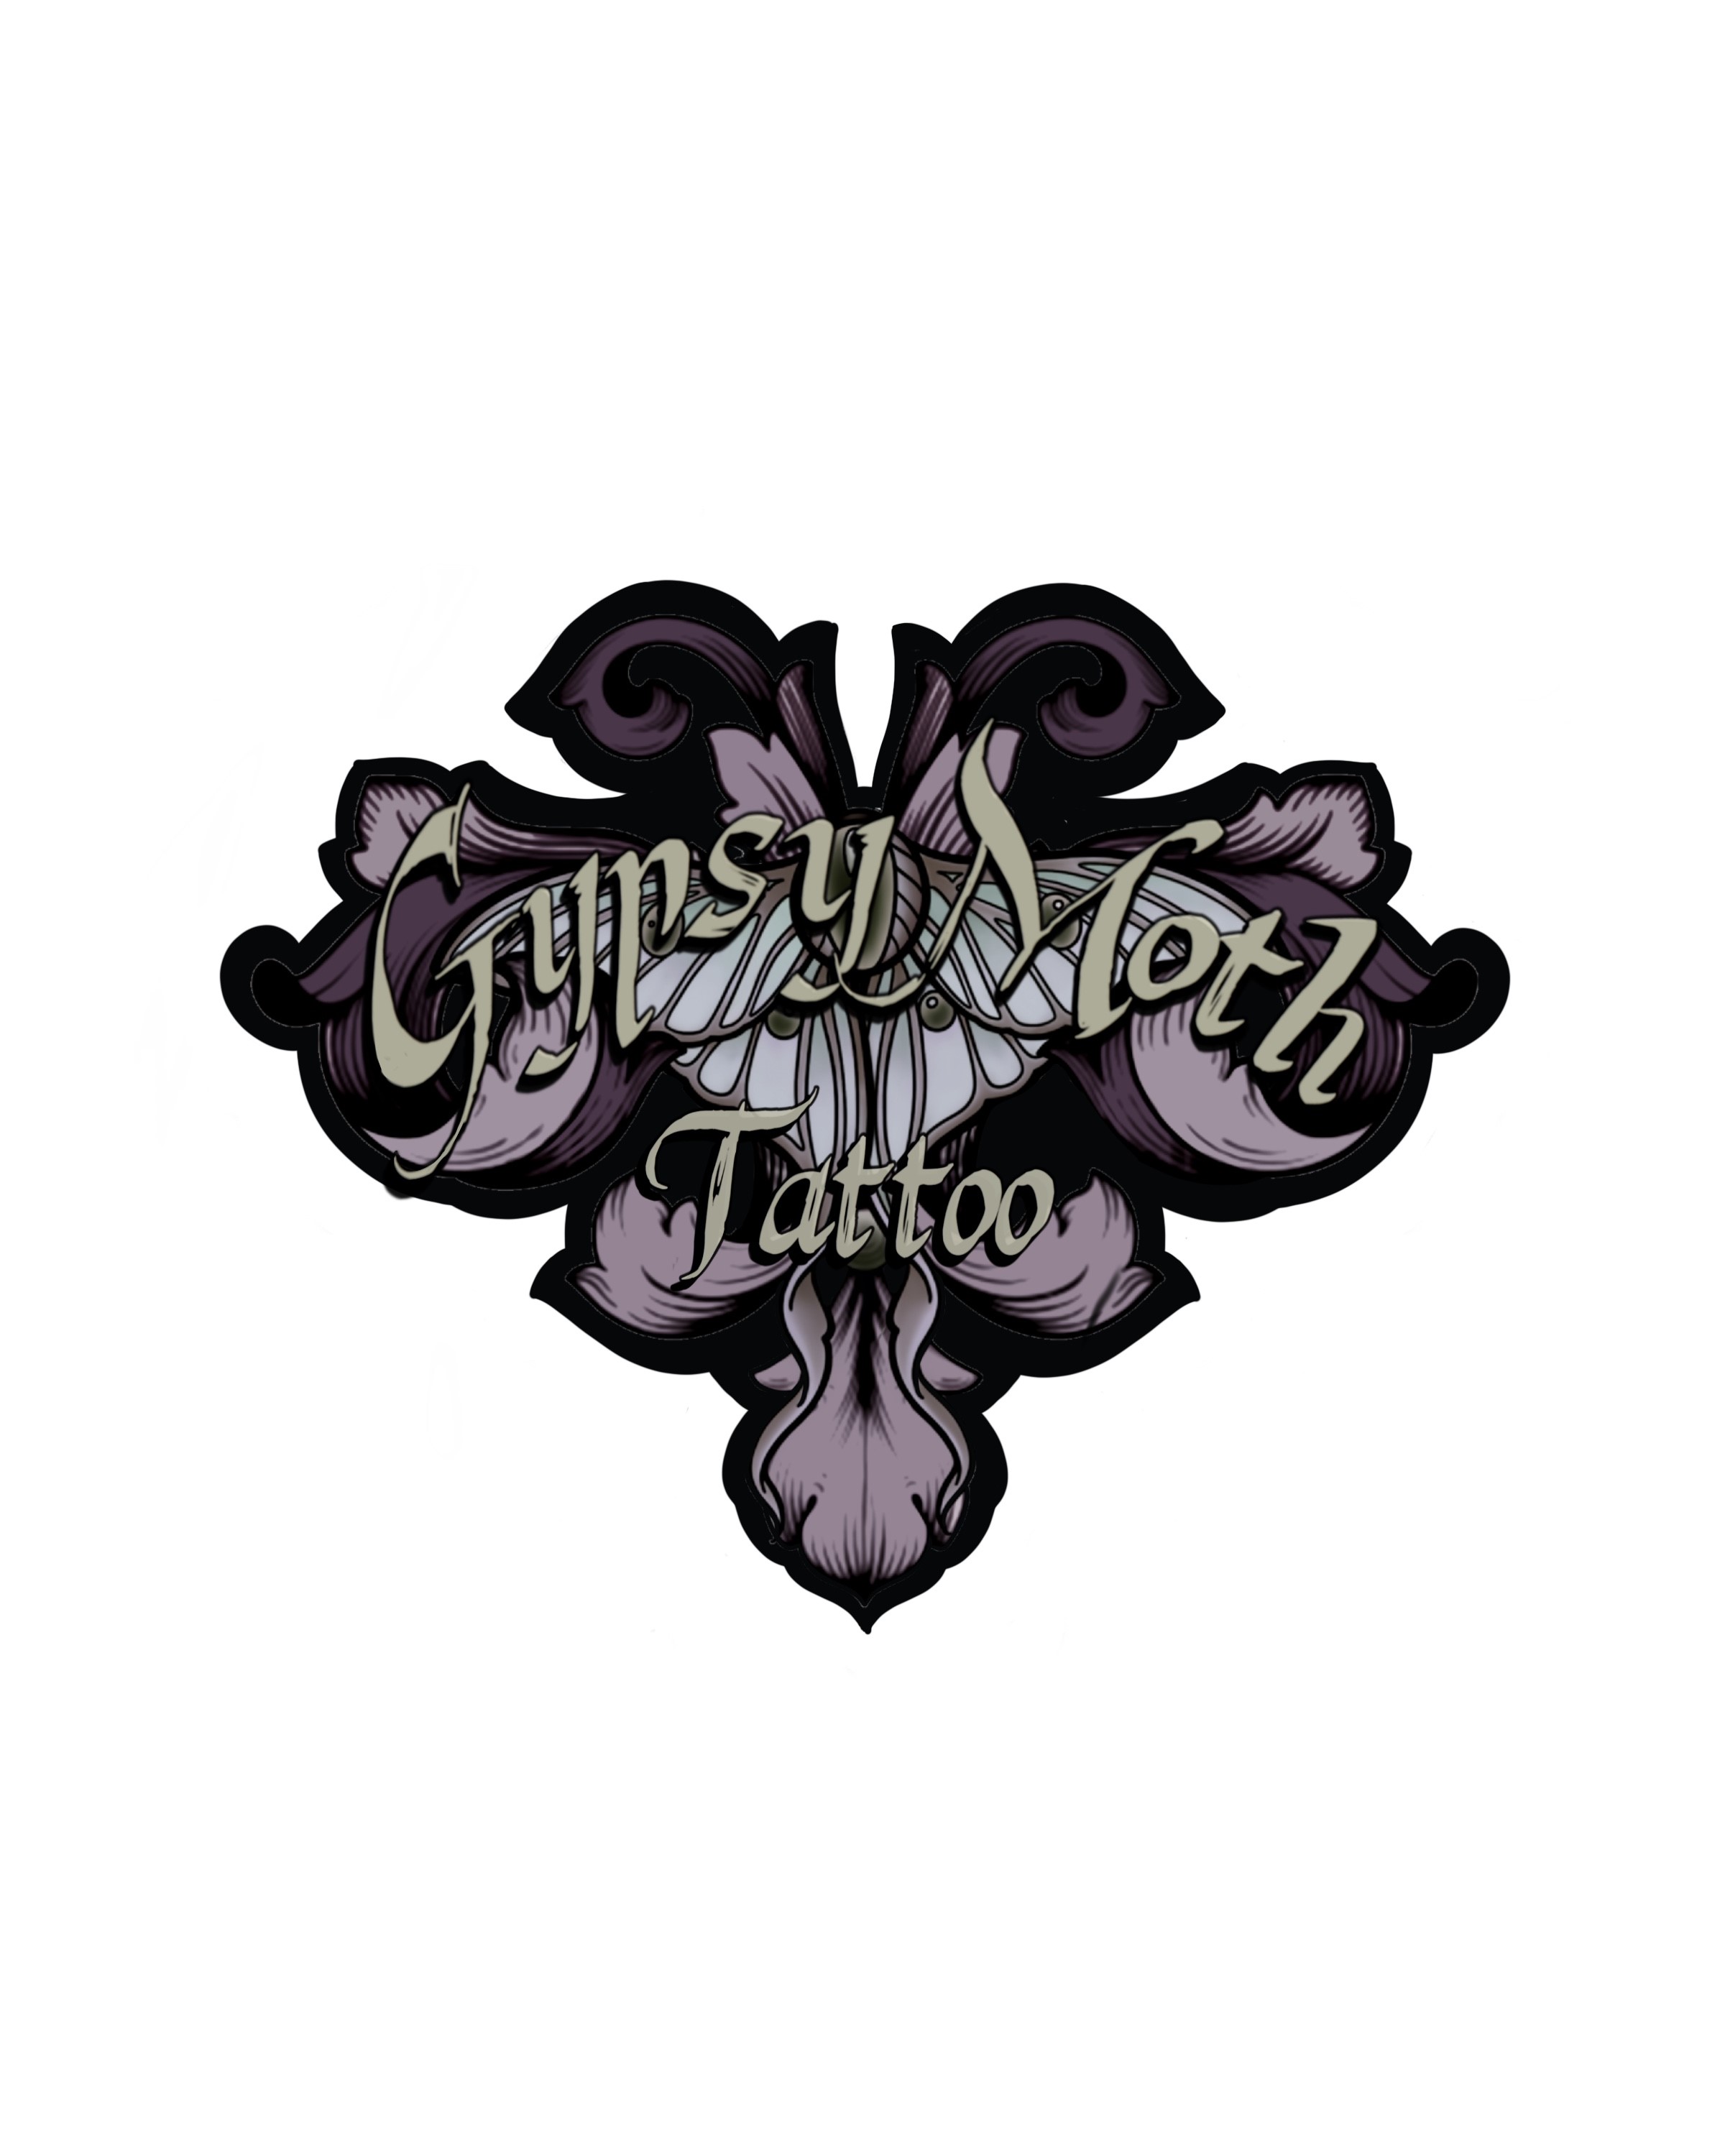 Gypsy Moth Tattoo Logo